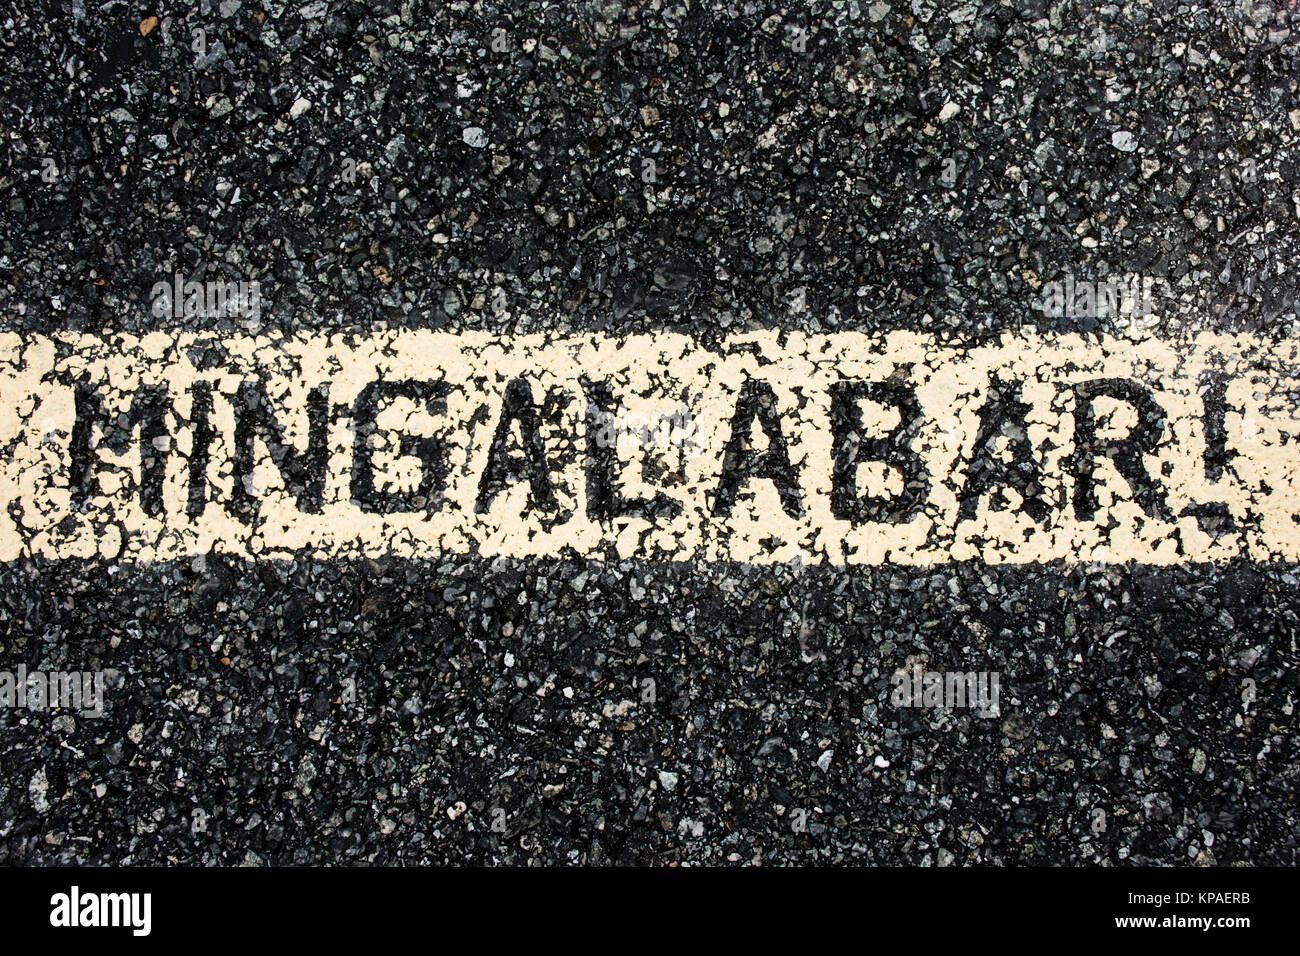 MinGaLaBar, c'est le Myanmar's greeting mots. Peinture sur la route Banque D'Images